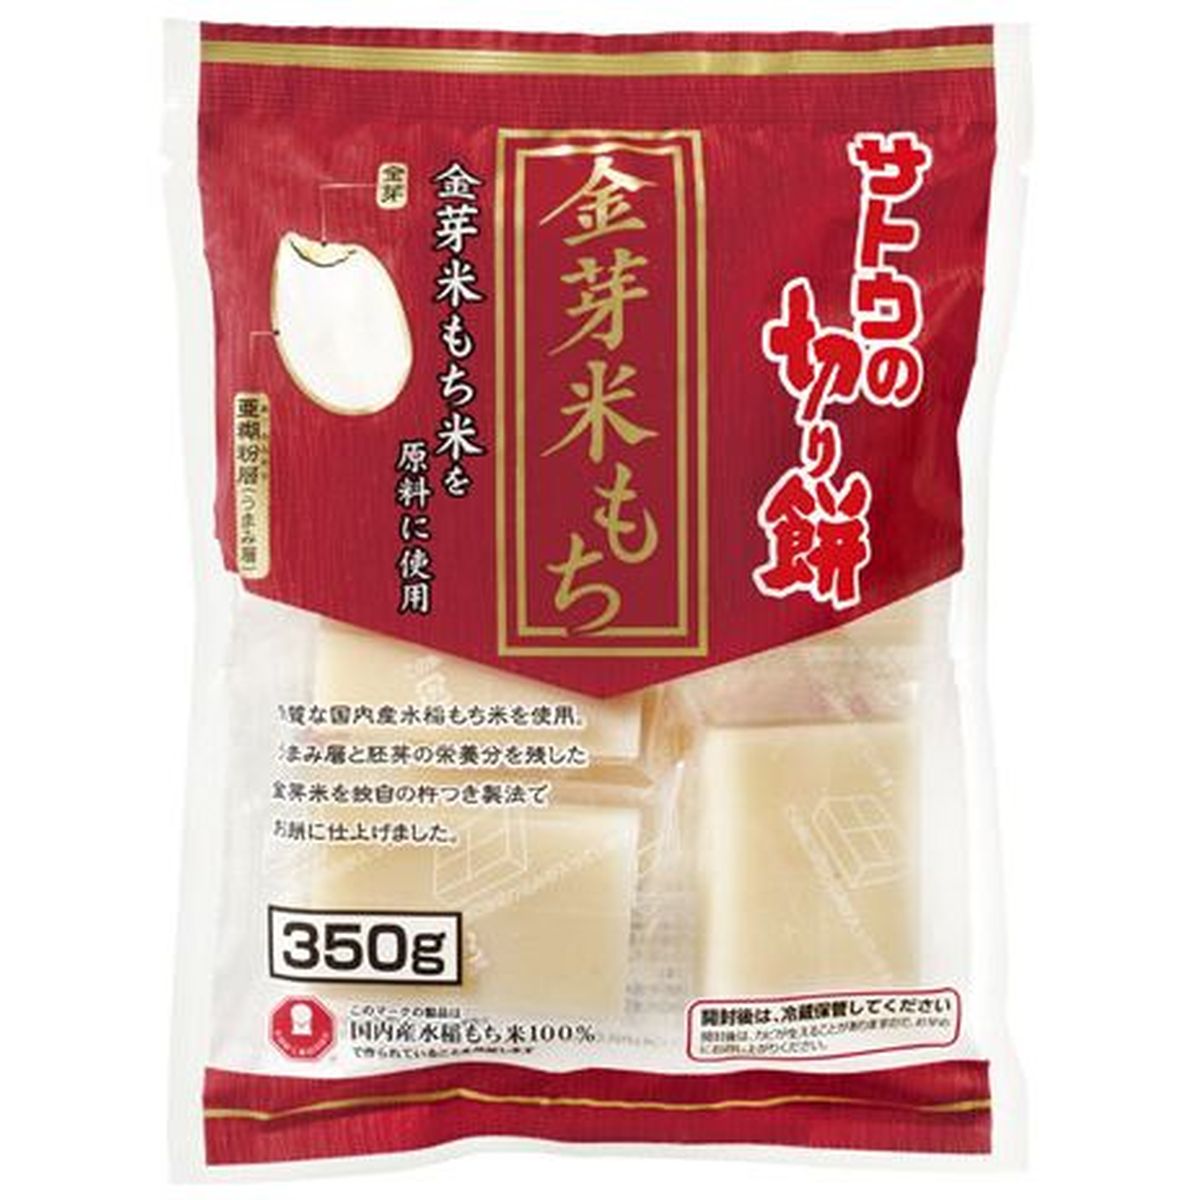 【12個入リ】サトウ サトウノ切リ餅 金芽米モチ 350g